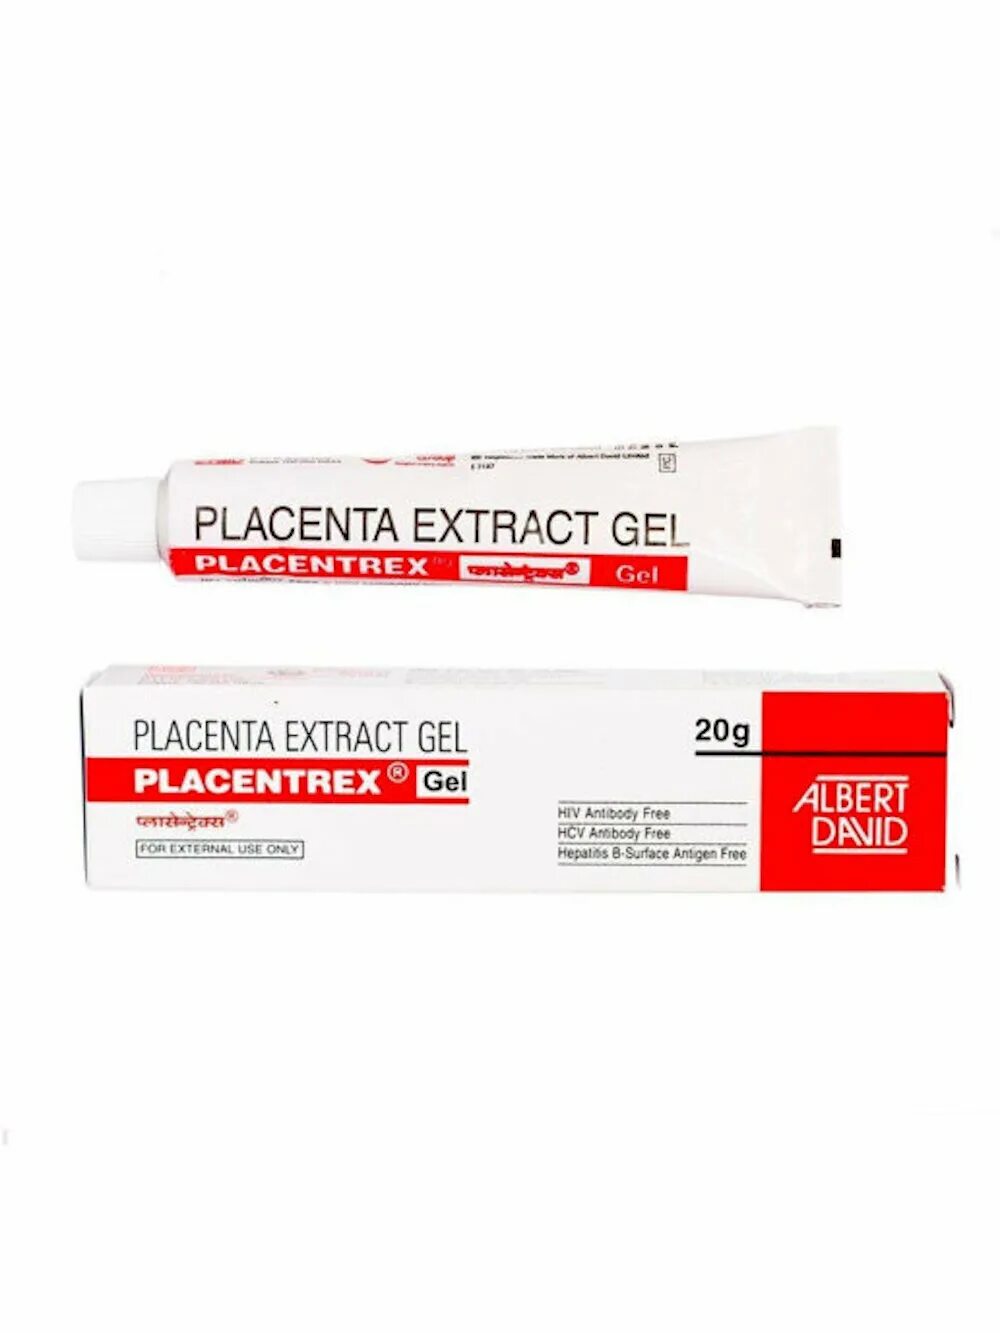 Плацентарный гель купить. Гель с плацентой Placentrex 20. Albert David / гель "Placentrex placenta extract Gel. Placentrex Gel гель. Крем экстракт плаценты Индия.